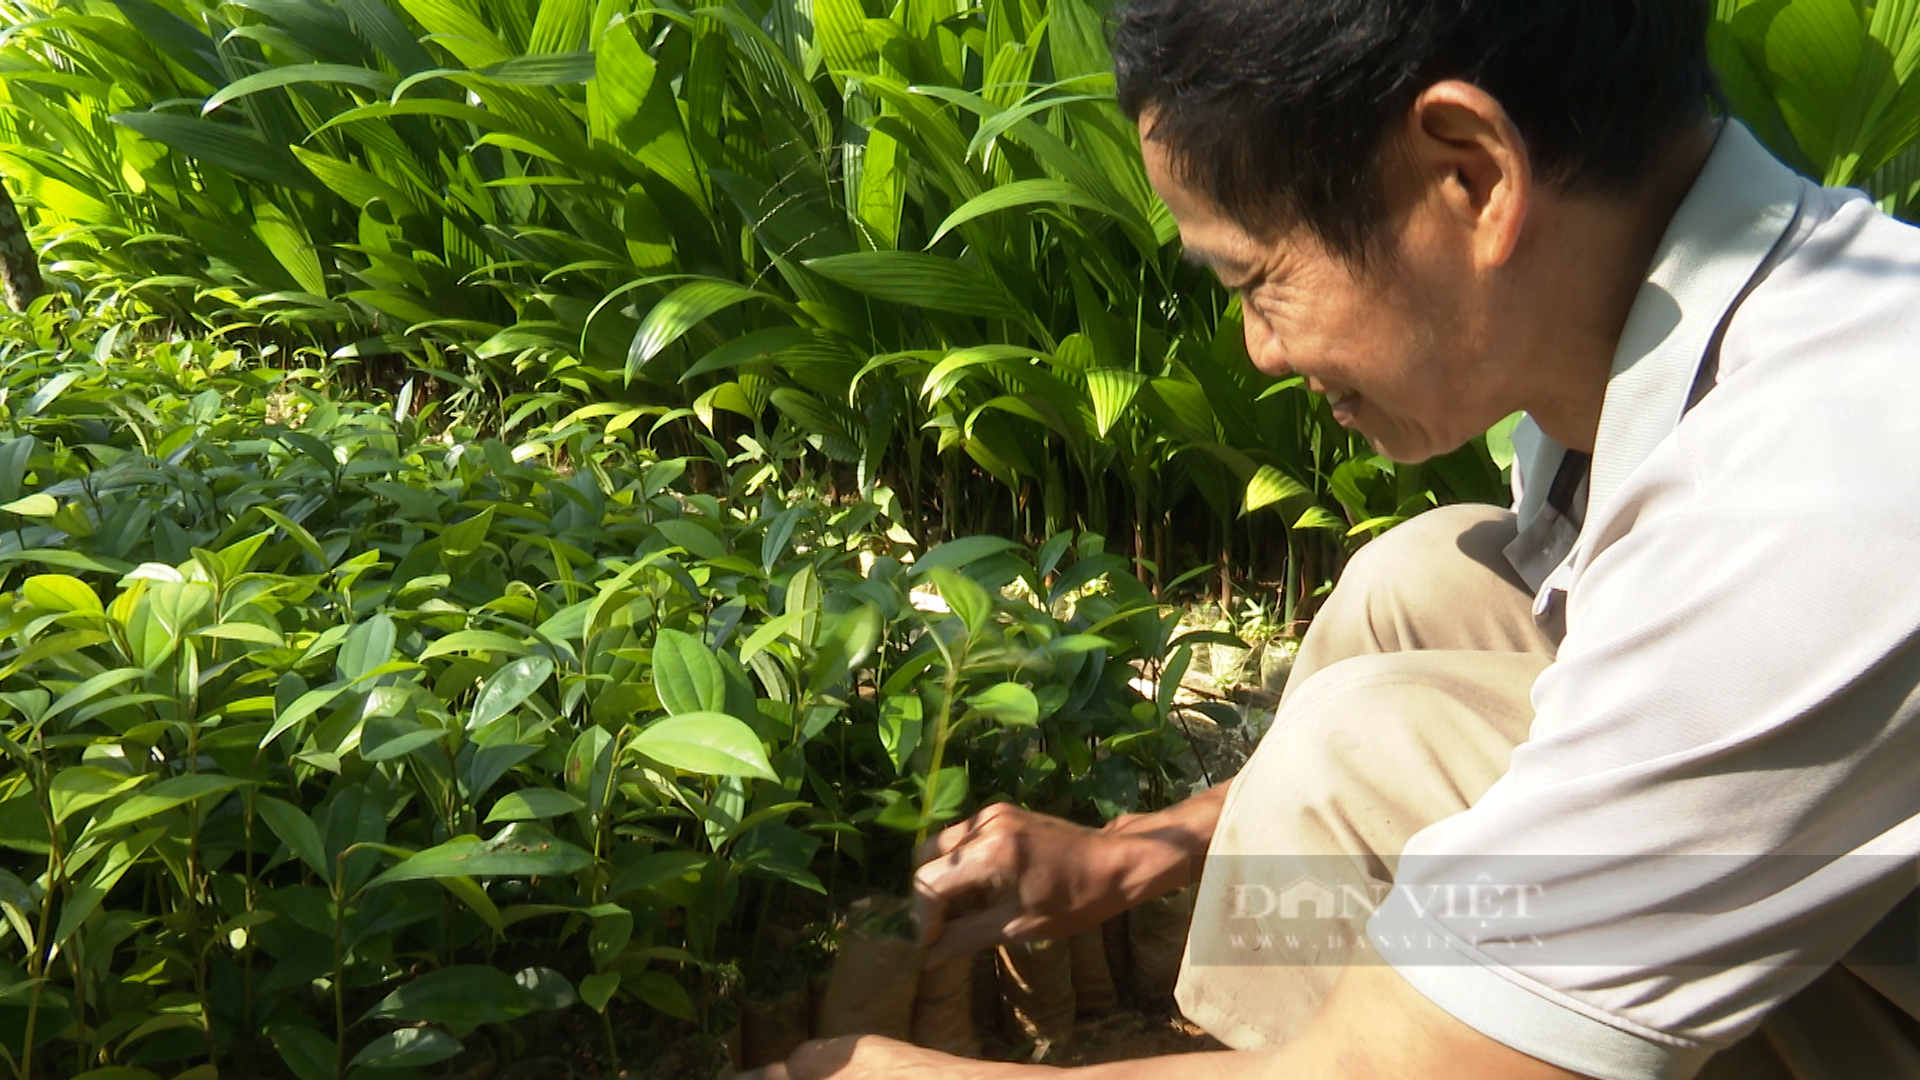 Nhờ xuất hàng triệu cây giống, lão nông xứ Quảng lãi cả trăm triệu đồng - Ảnh 5.